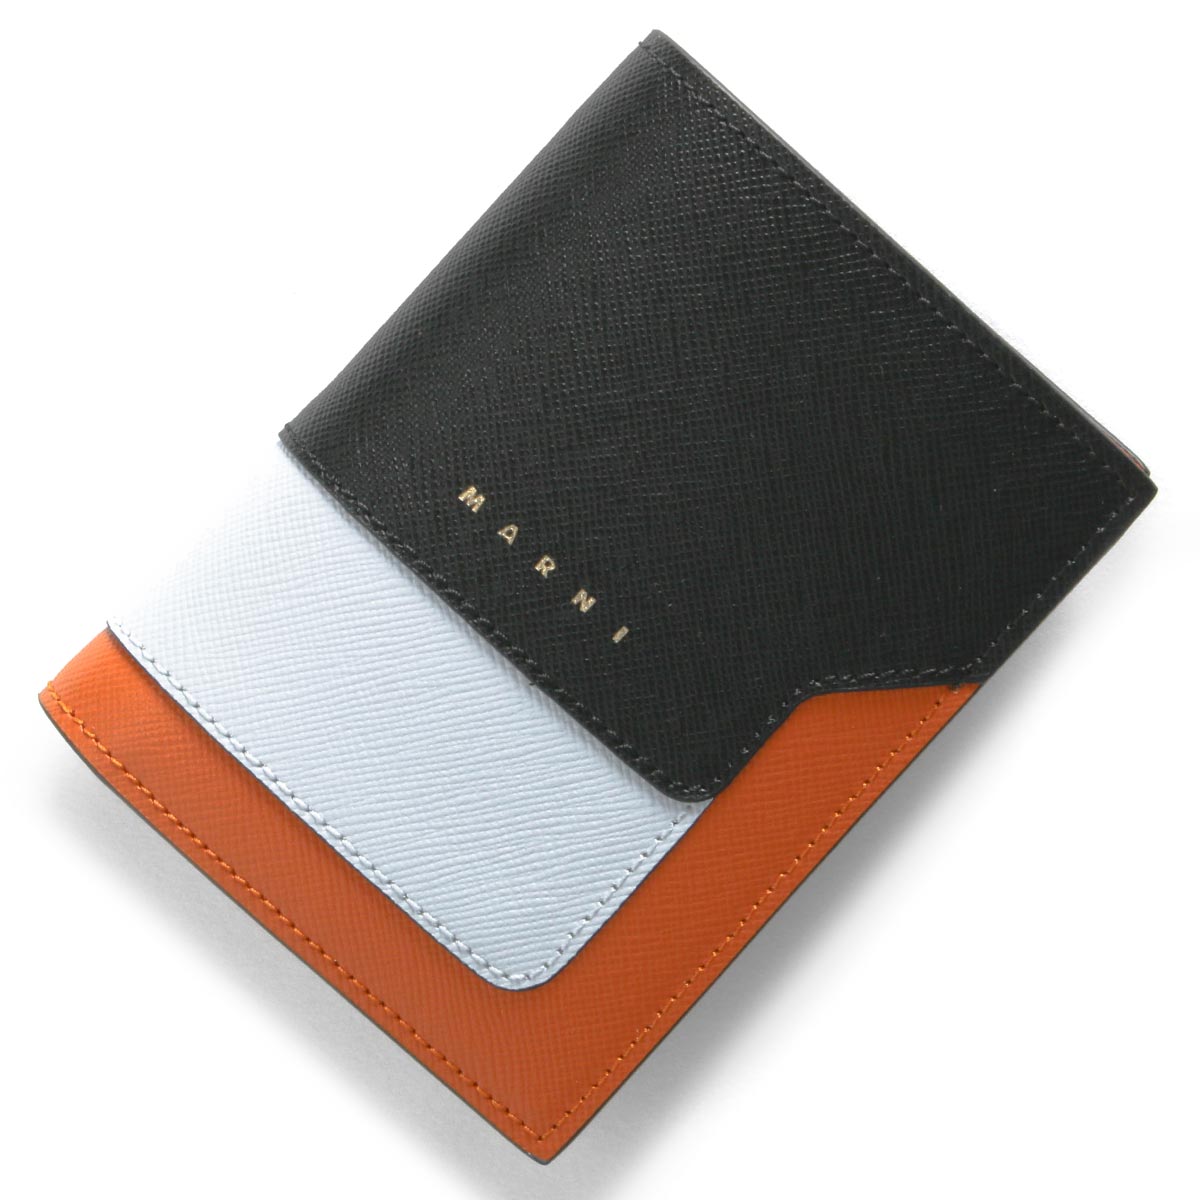 マルニ 二つ折り財布 財布 レディース ブラック&イリュージョンライト